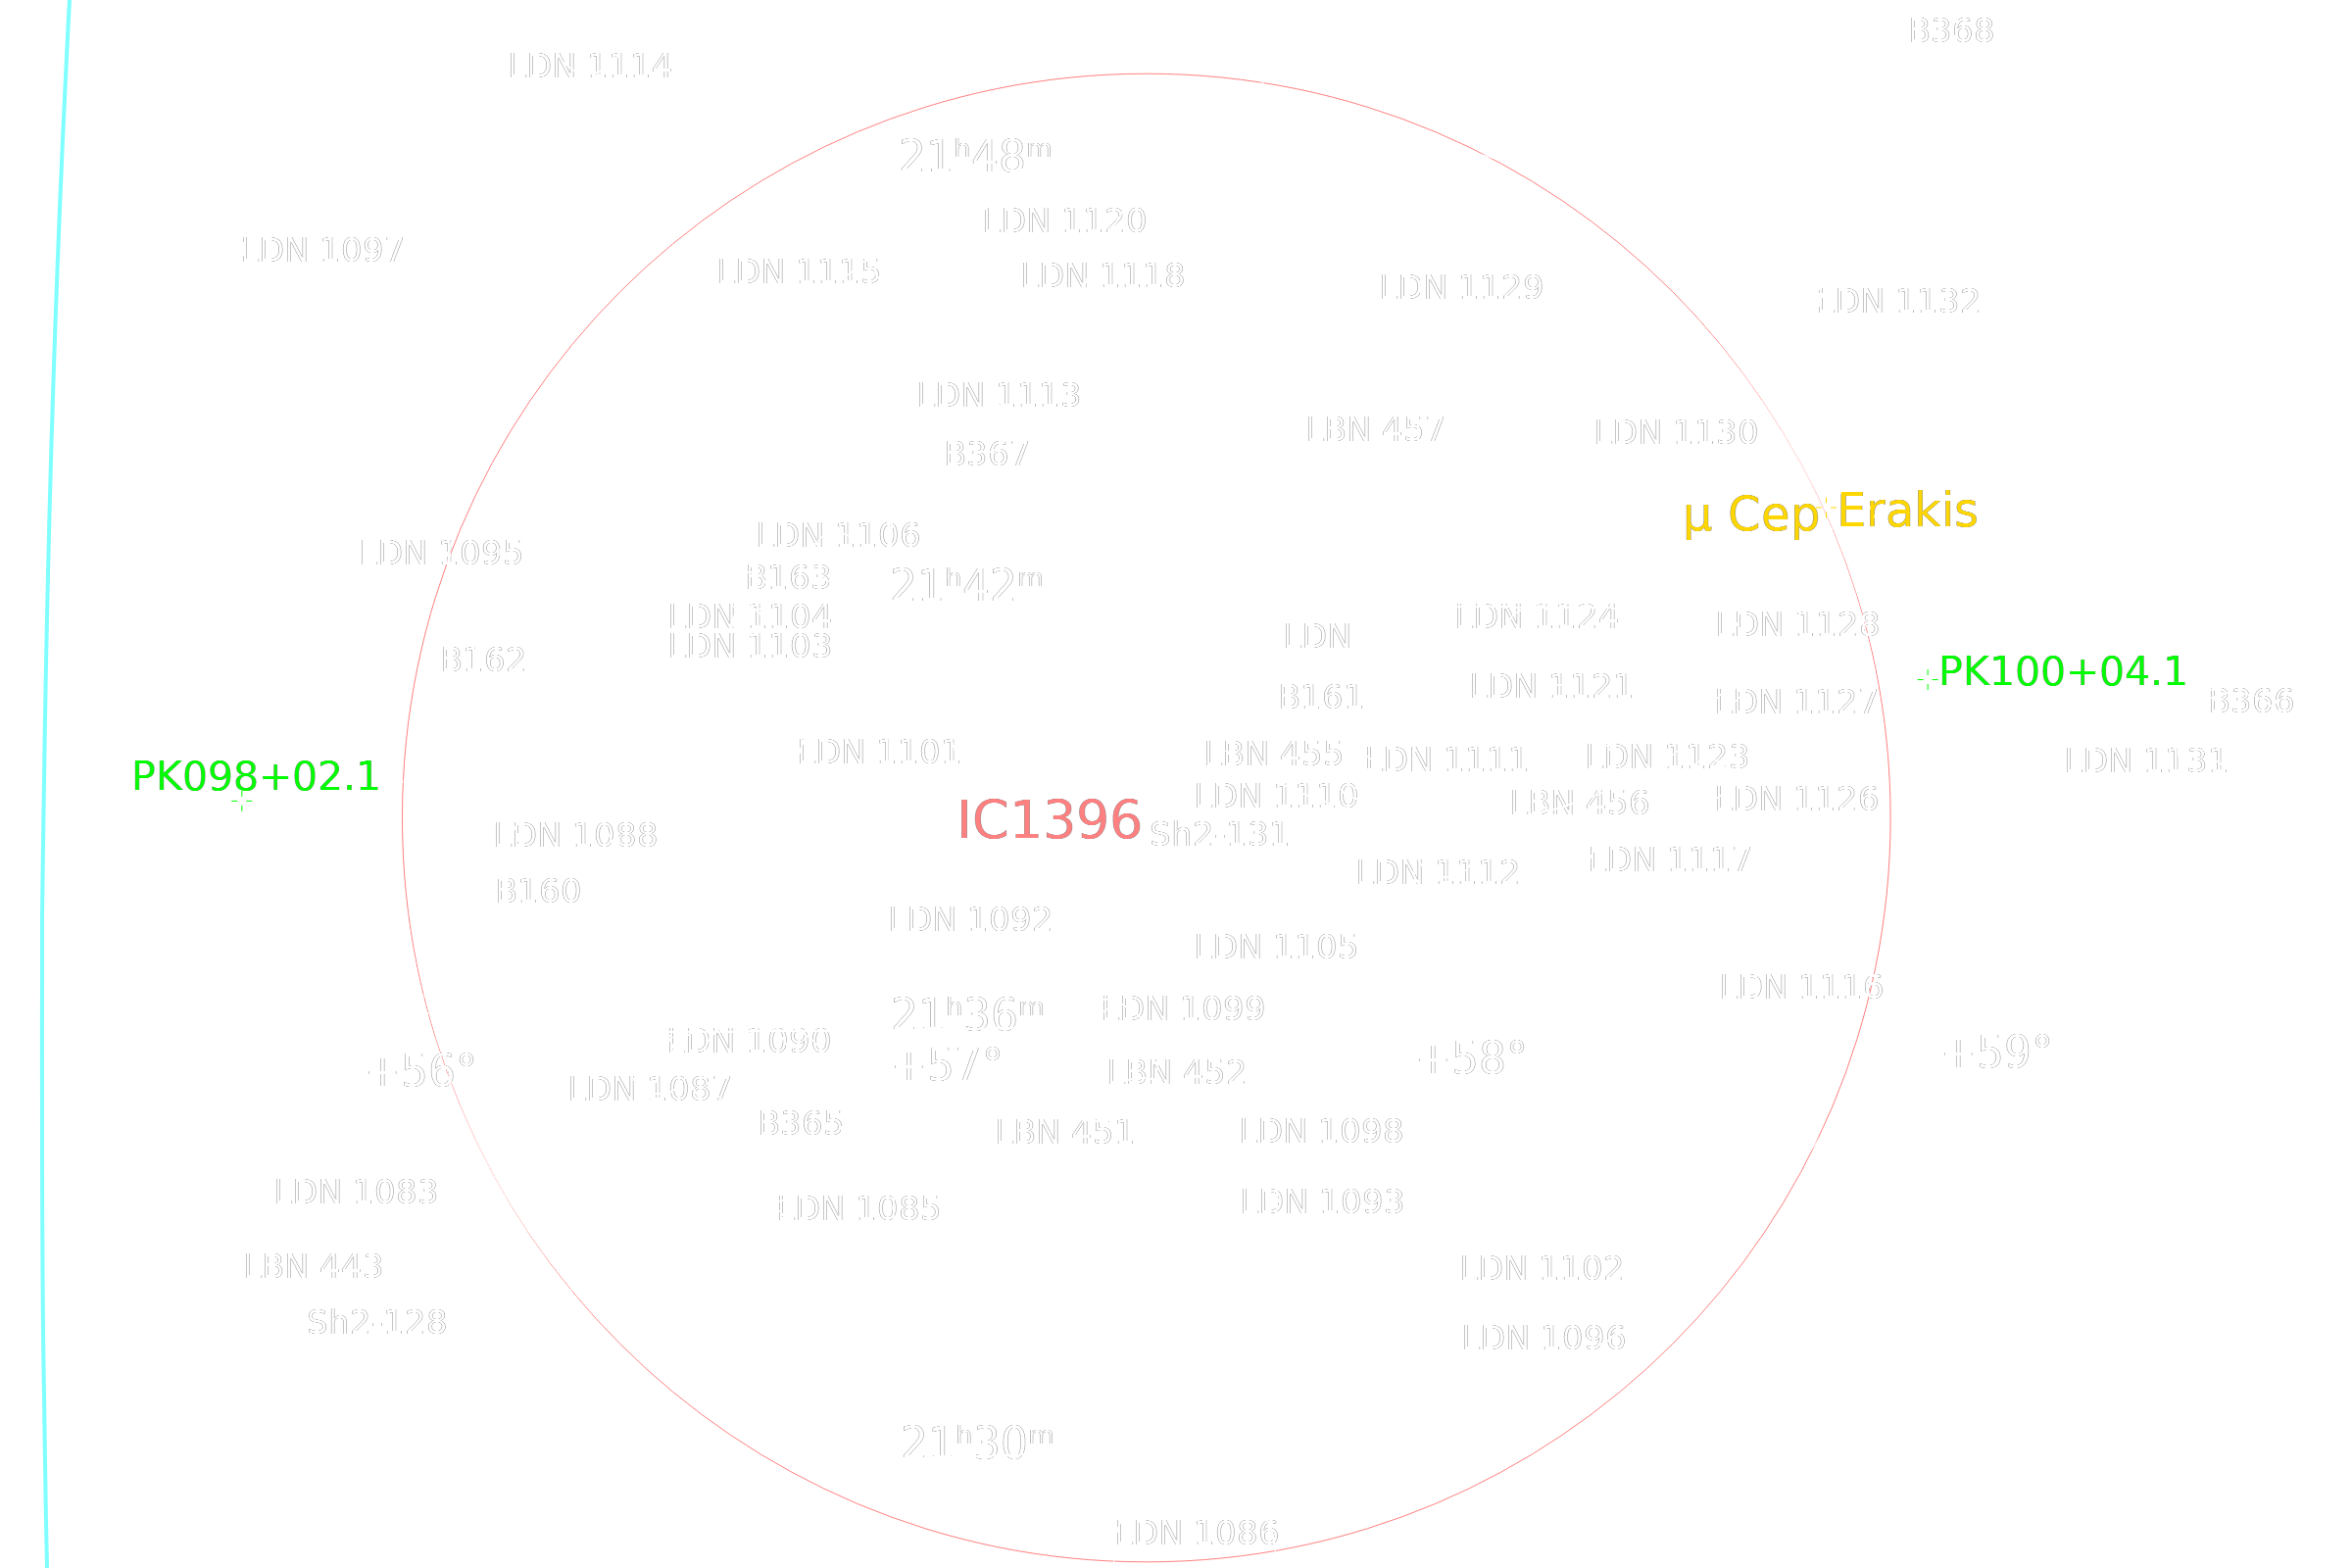 IC1396 in Cepheus